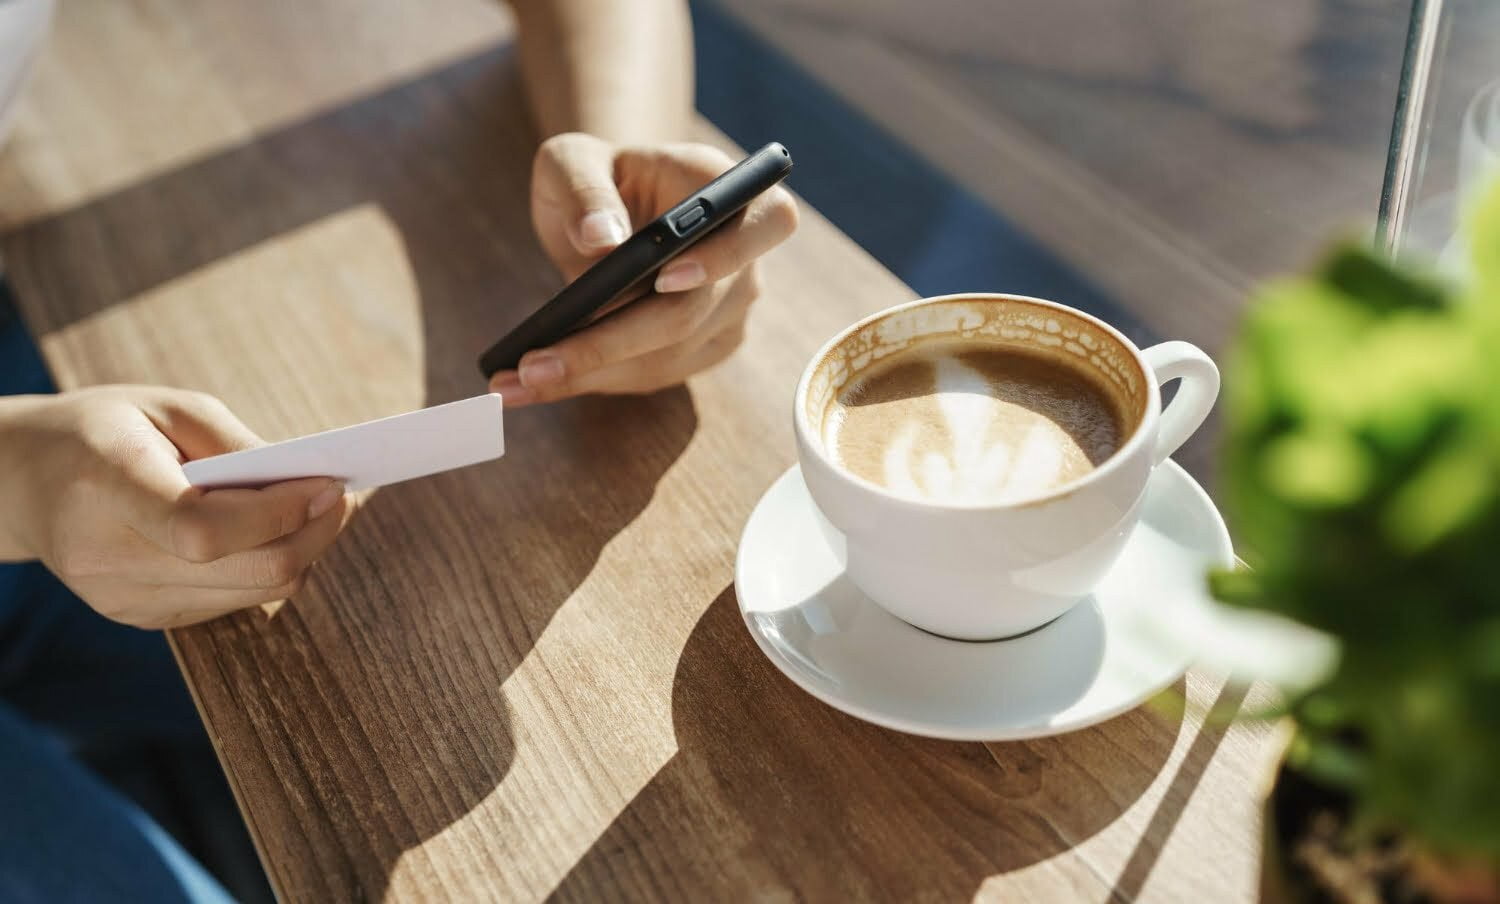 persona con una taza de café en una mesa y el celular en la mano